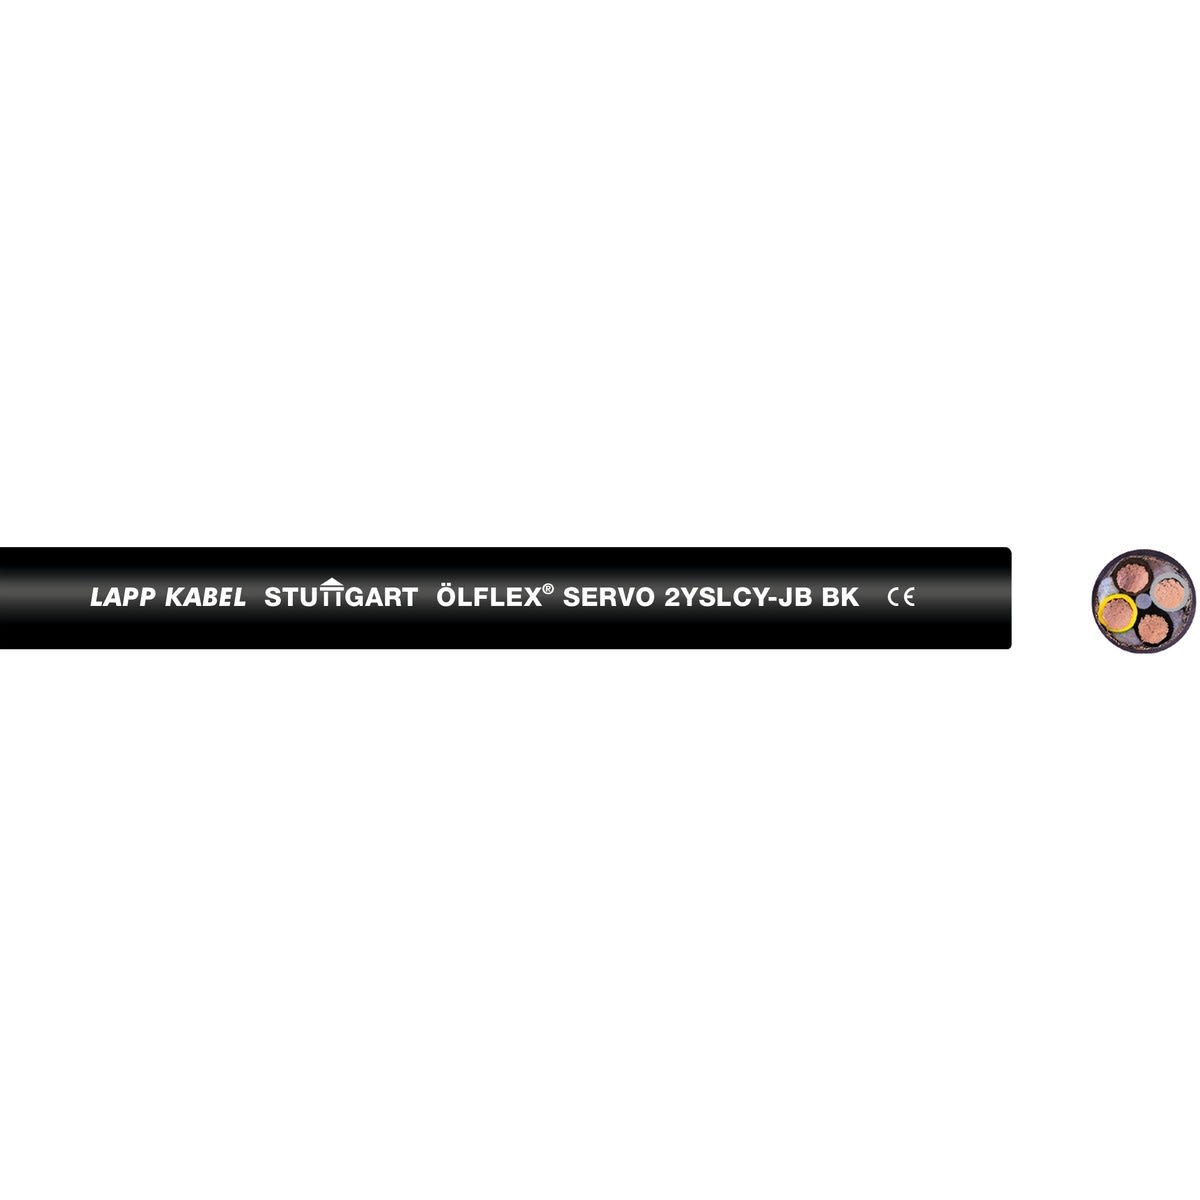 Lapp - ÖLFLEX SERVO 2YSLCY-JB BK 4G35